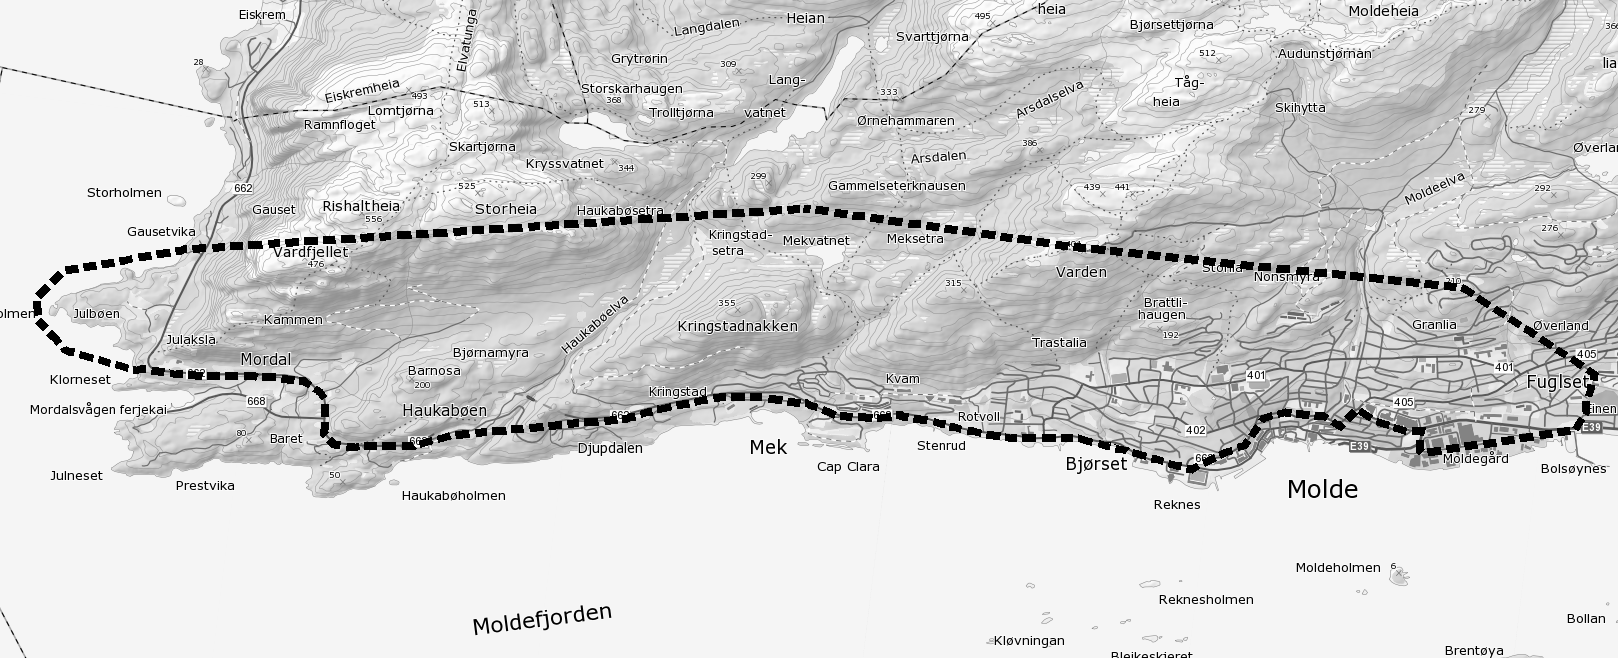 2 forlengelse av tunnelen fra Bolsønes og videre østover gjøres som en egen delutredning som behandles tidlig i planarbeidet.